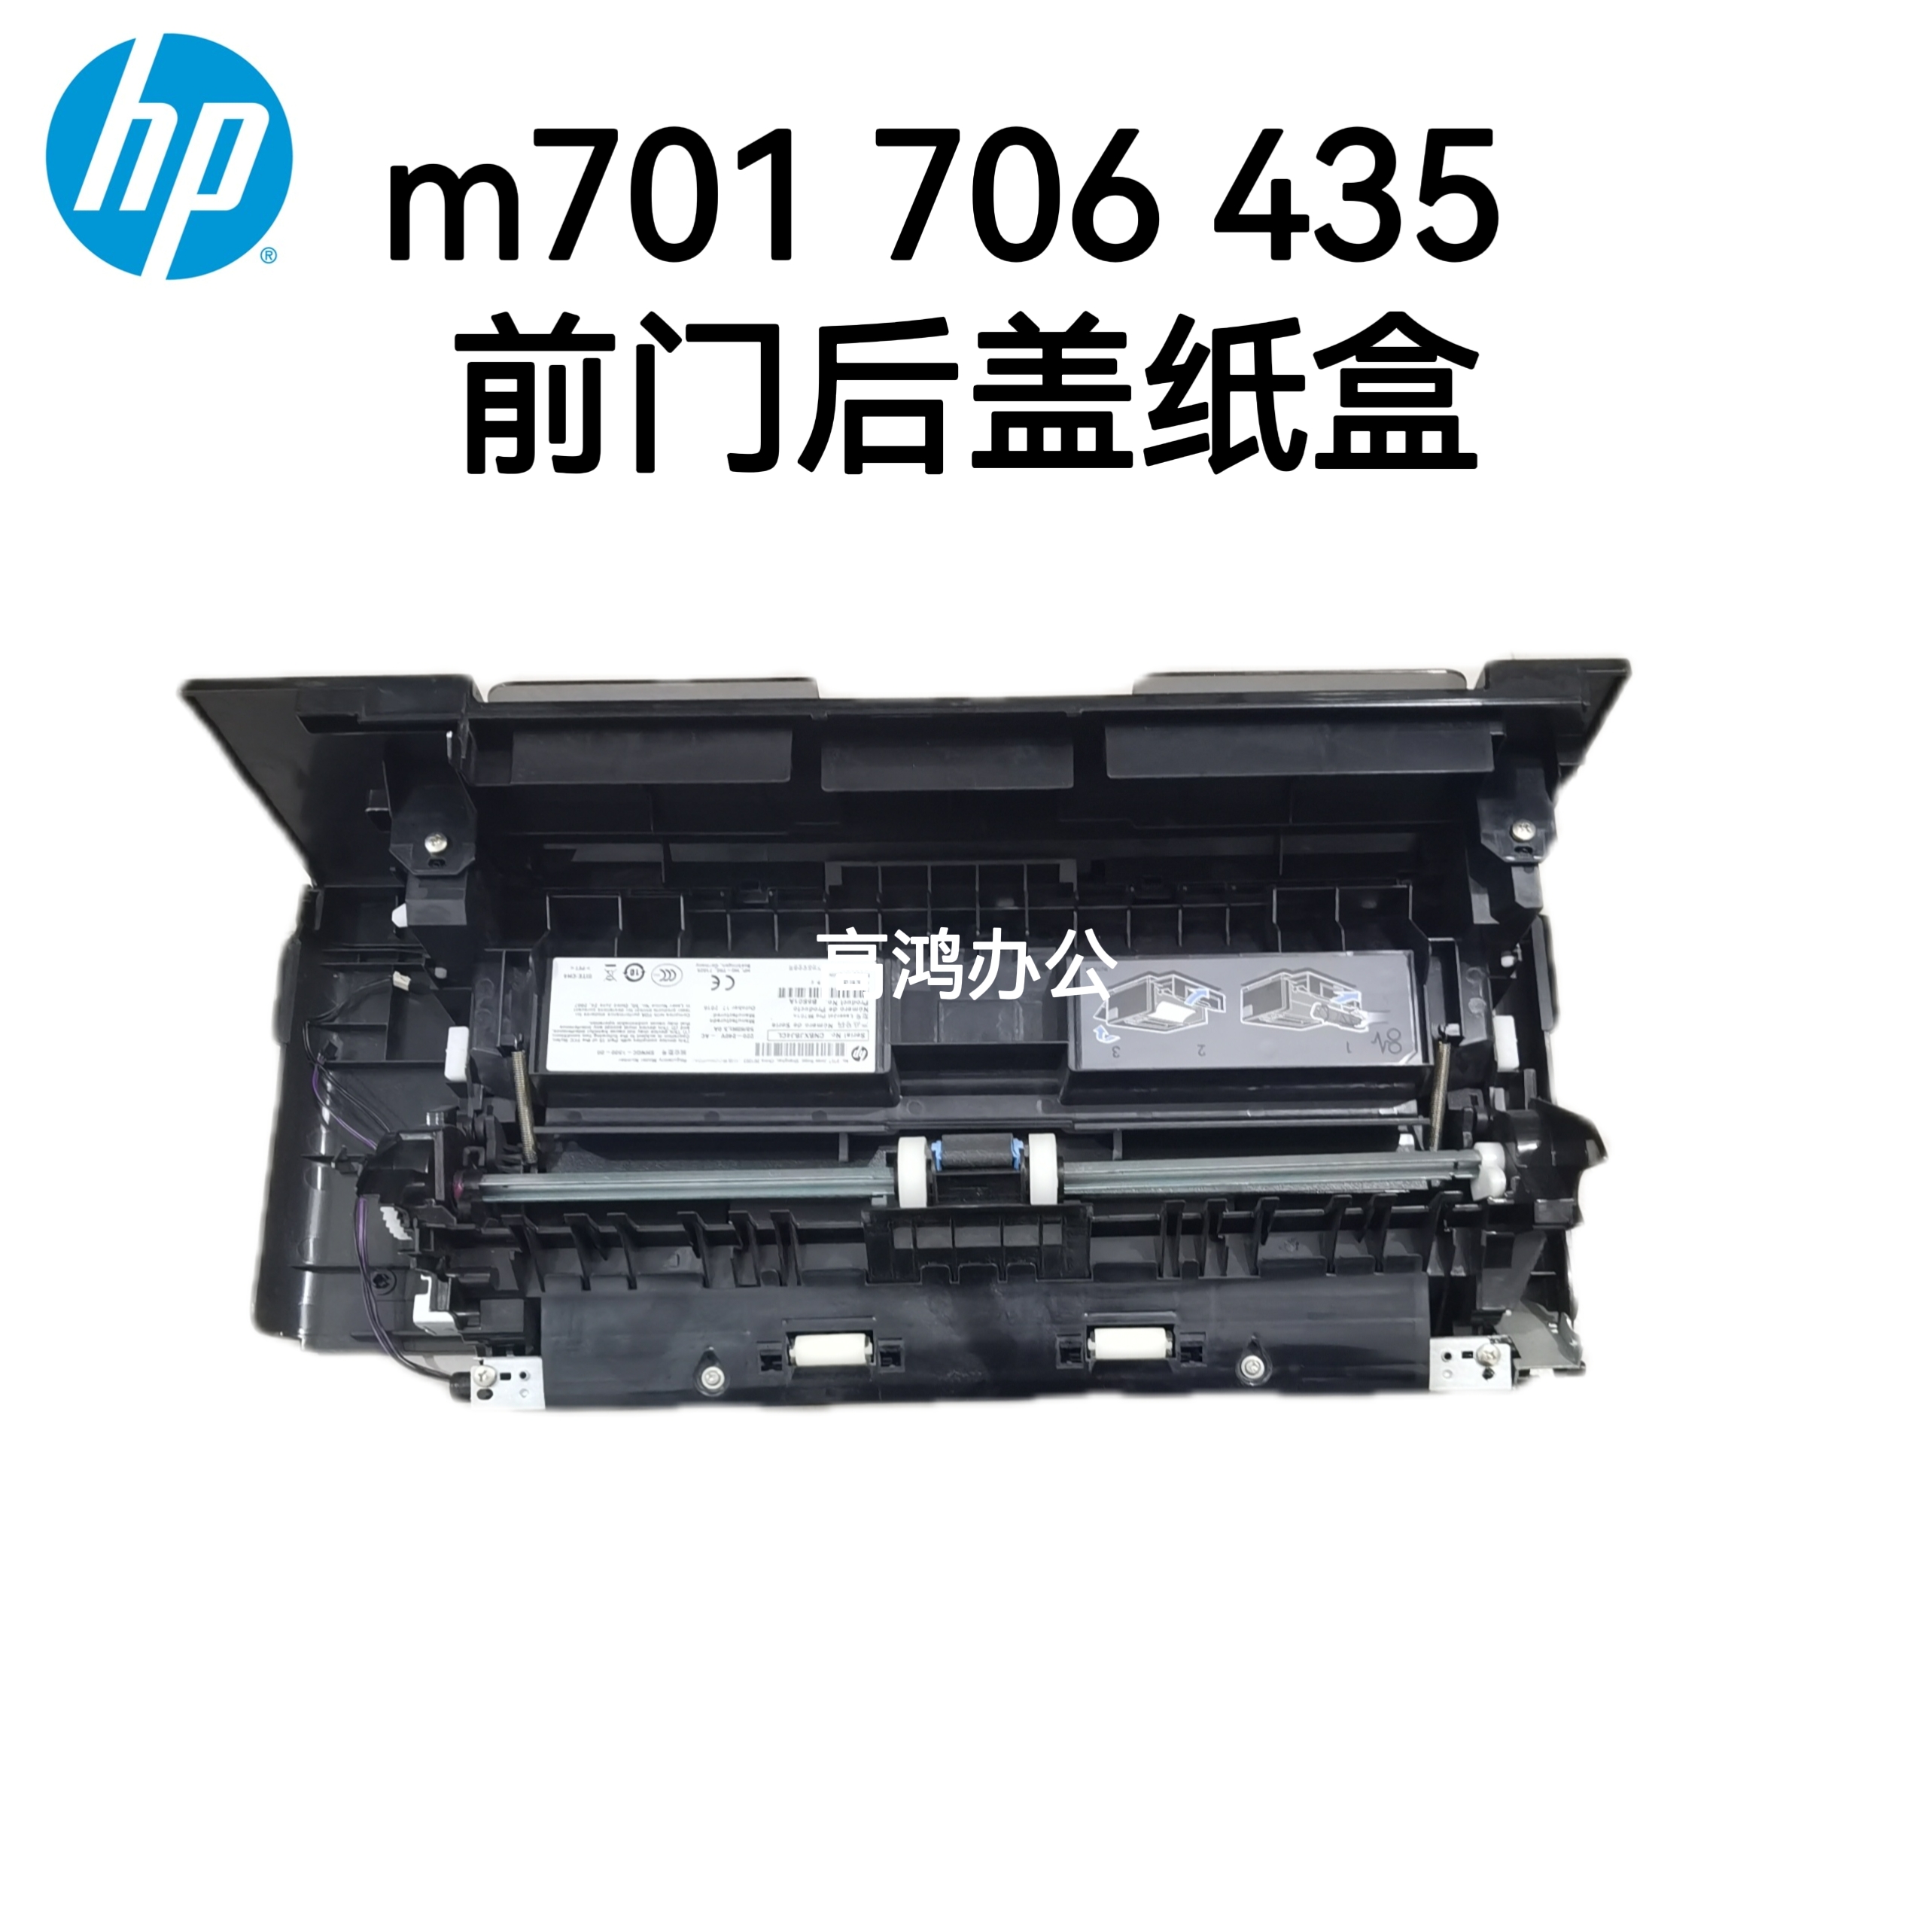 惠普 HP M701a 706n 435nw 前门手送纸盘 后门 纸盒二 进纸器托盘 办公设备/耗材/相关服务 托纸板/进纸托盘 原图主图